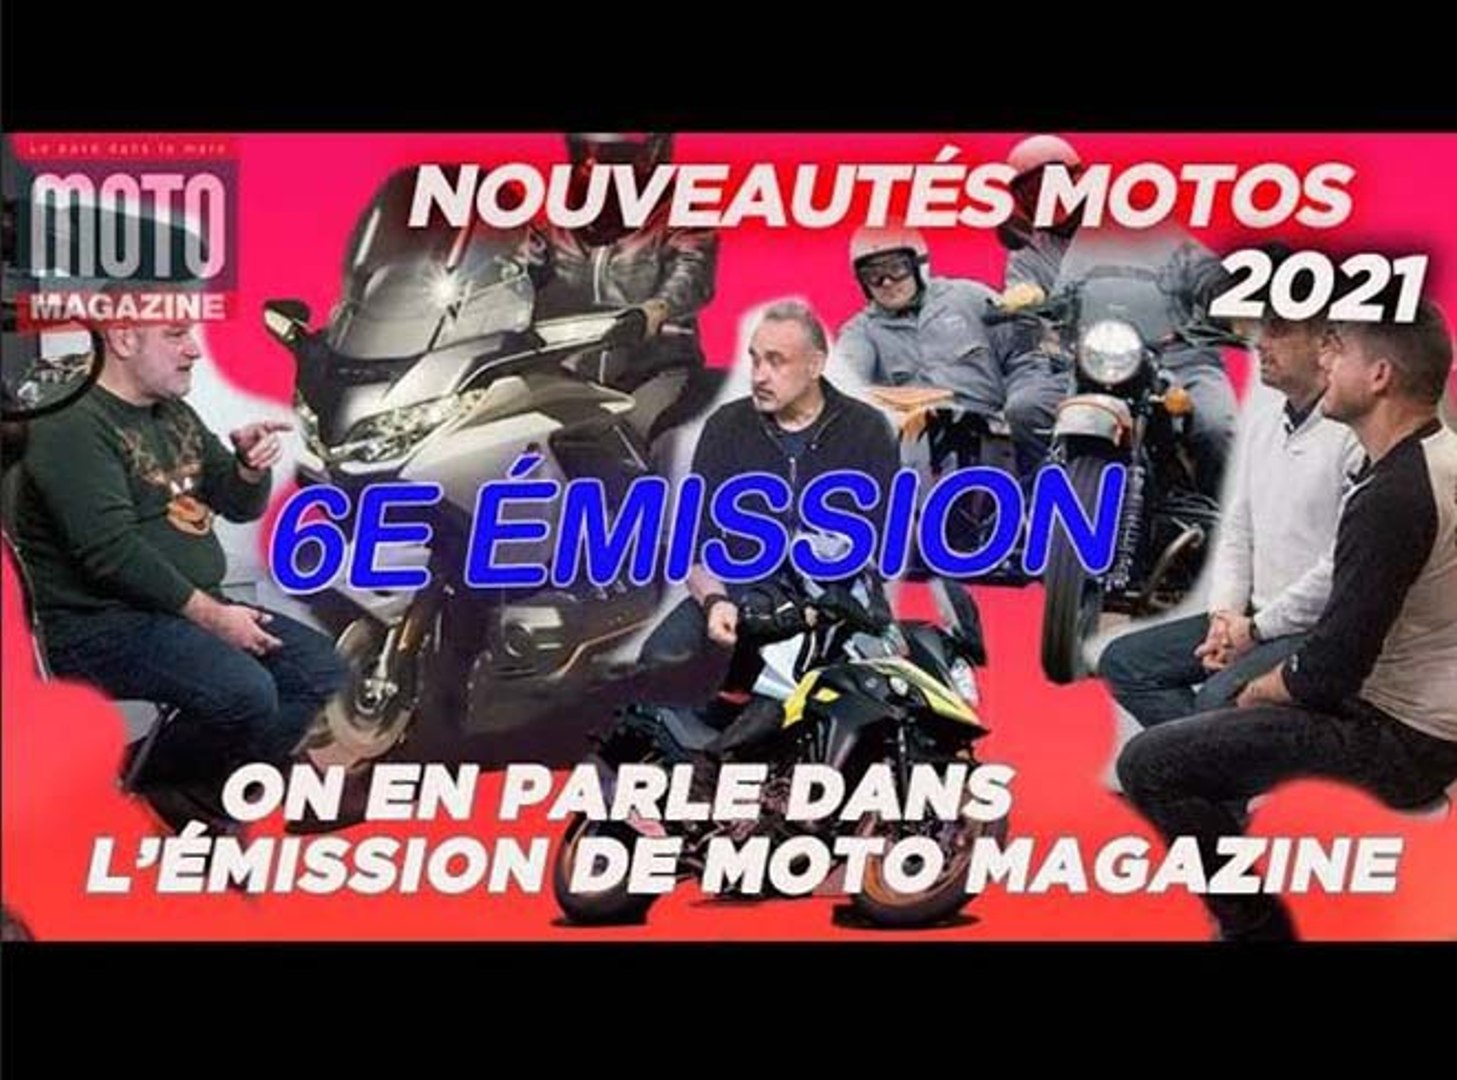 Nouveautés Moto 2021 - On en parle dans l'Emission n°6 de Moto Magazine -  Vidéo Dailymotion